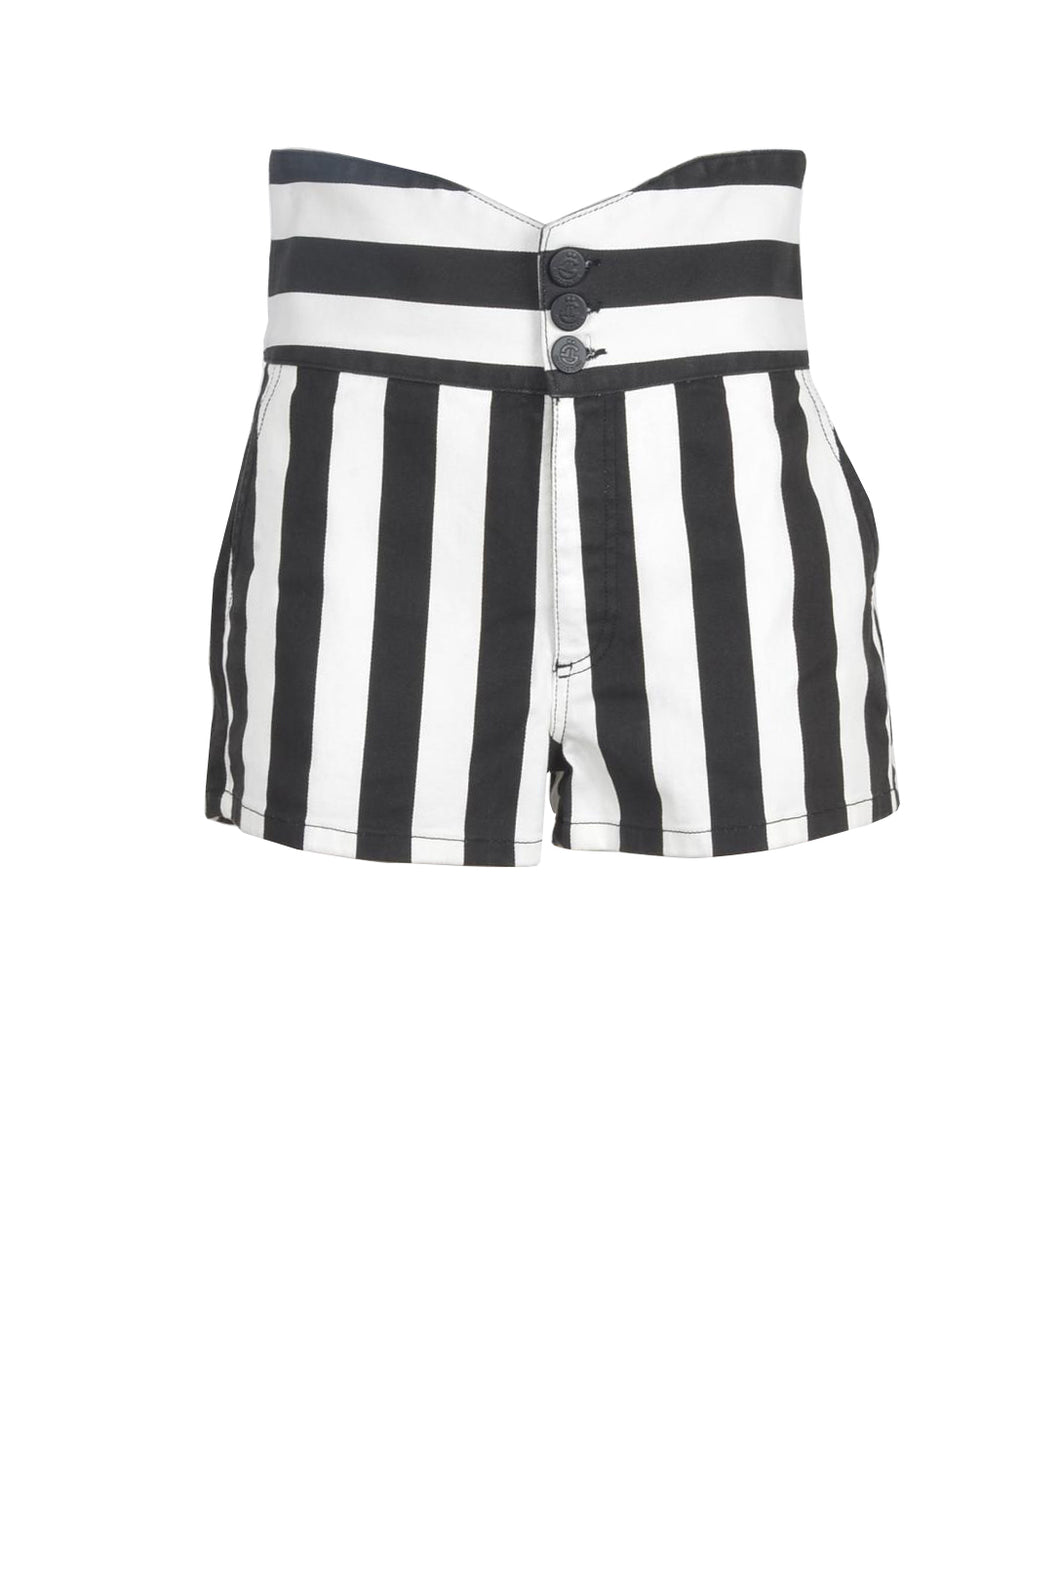 GAELLE Denim Shorts Black & White Stripes Size M